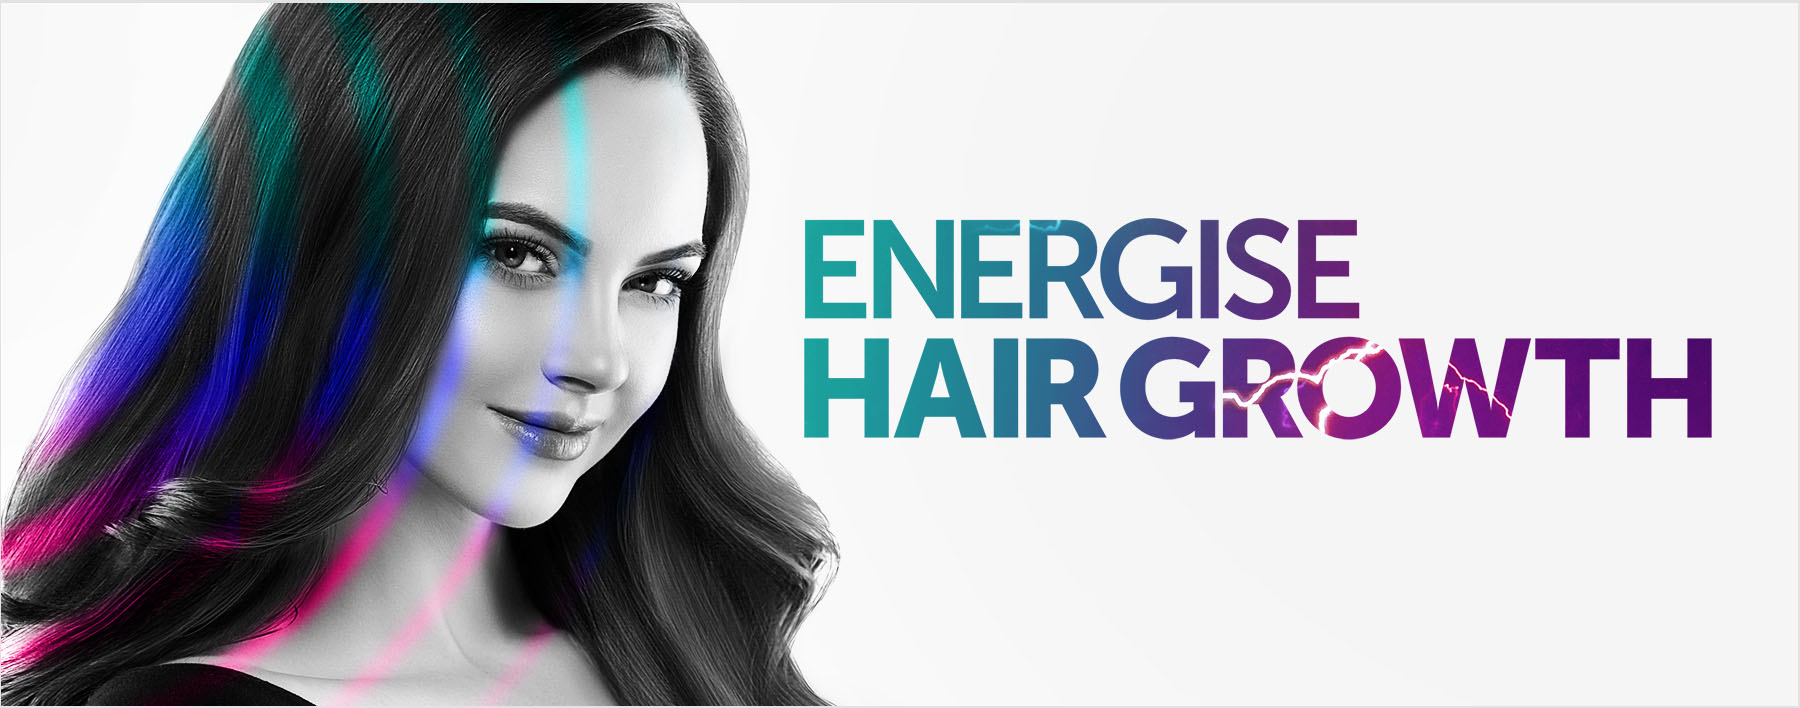 Energise hair growth